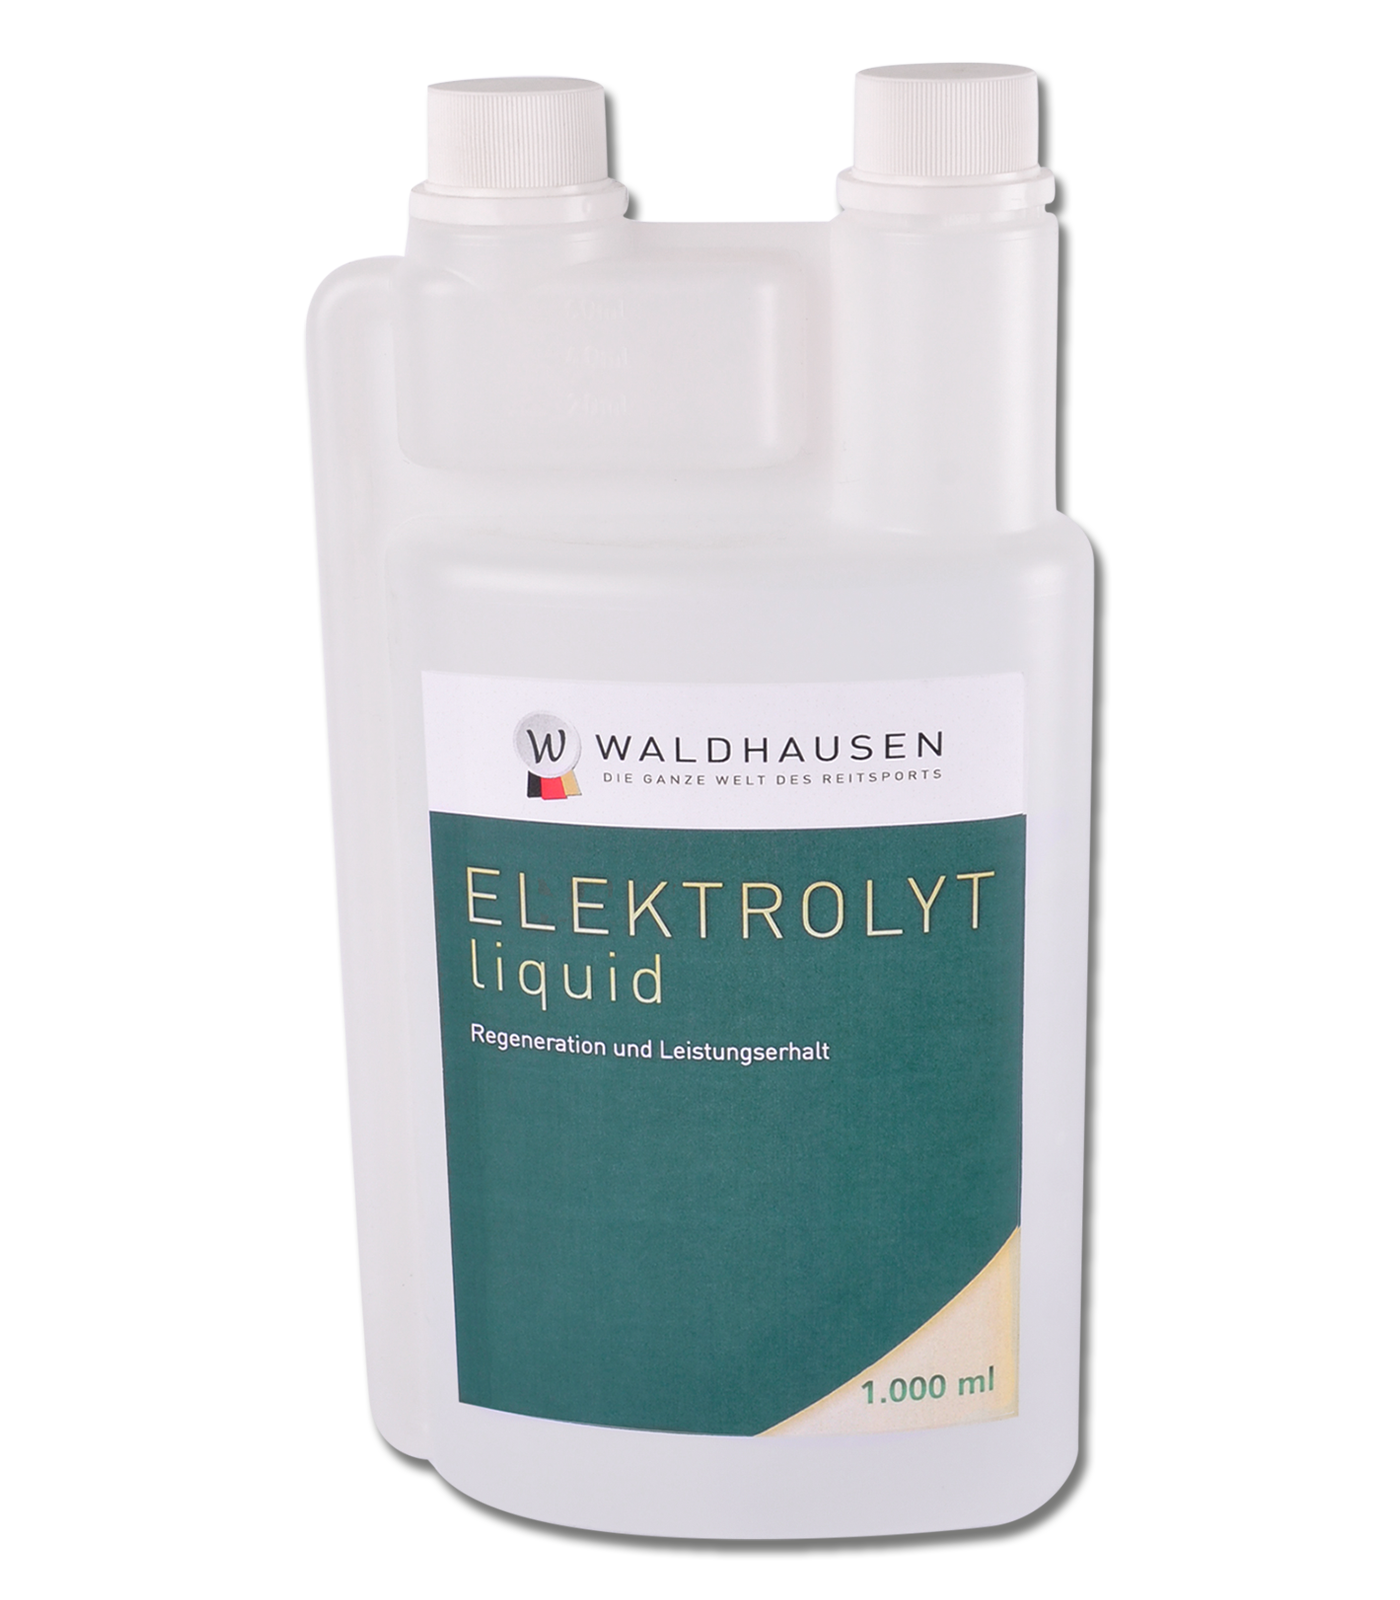 Waldhausen Elektrolyt Liquid – Regeneration und Leistungserhalt